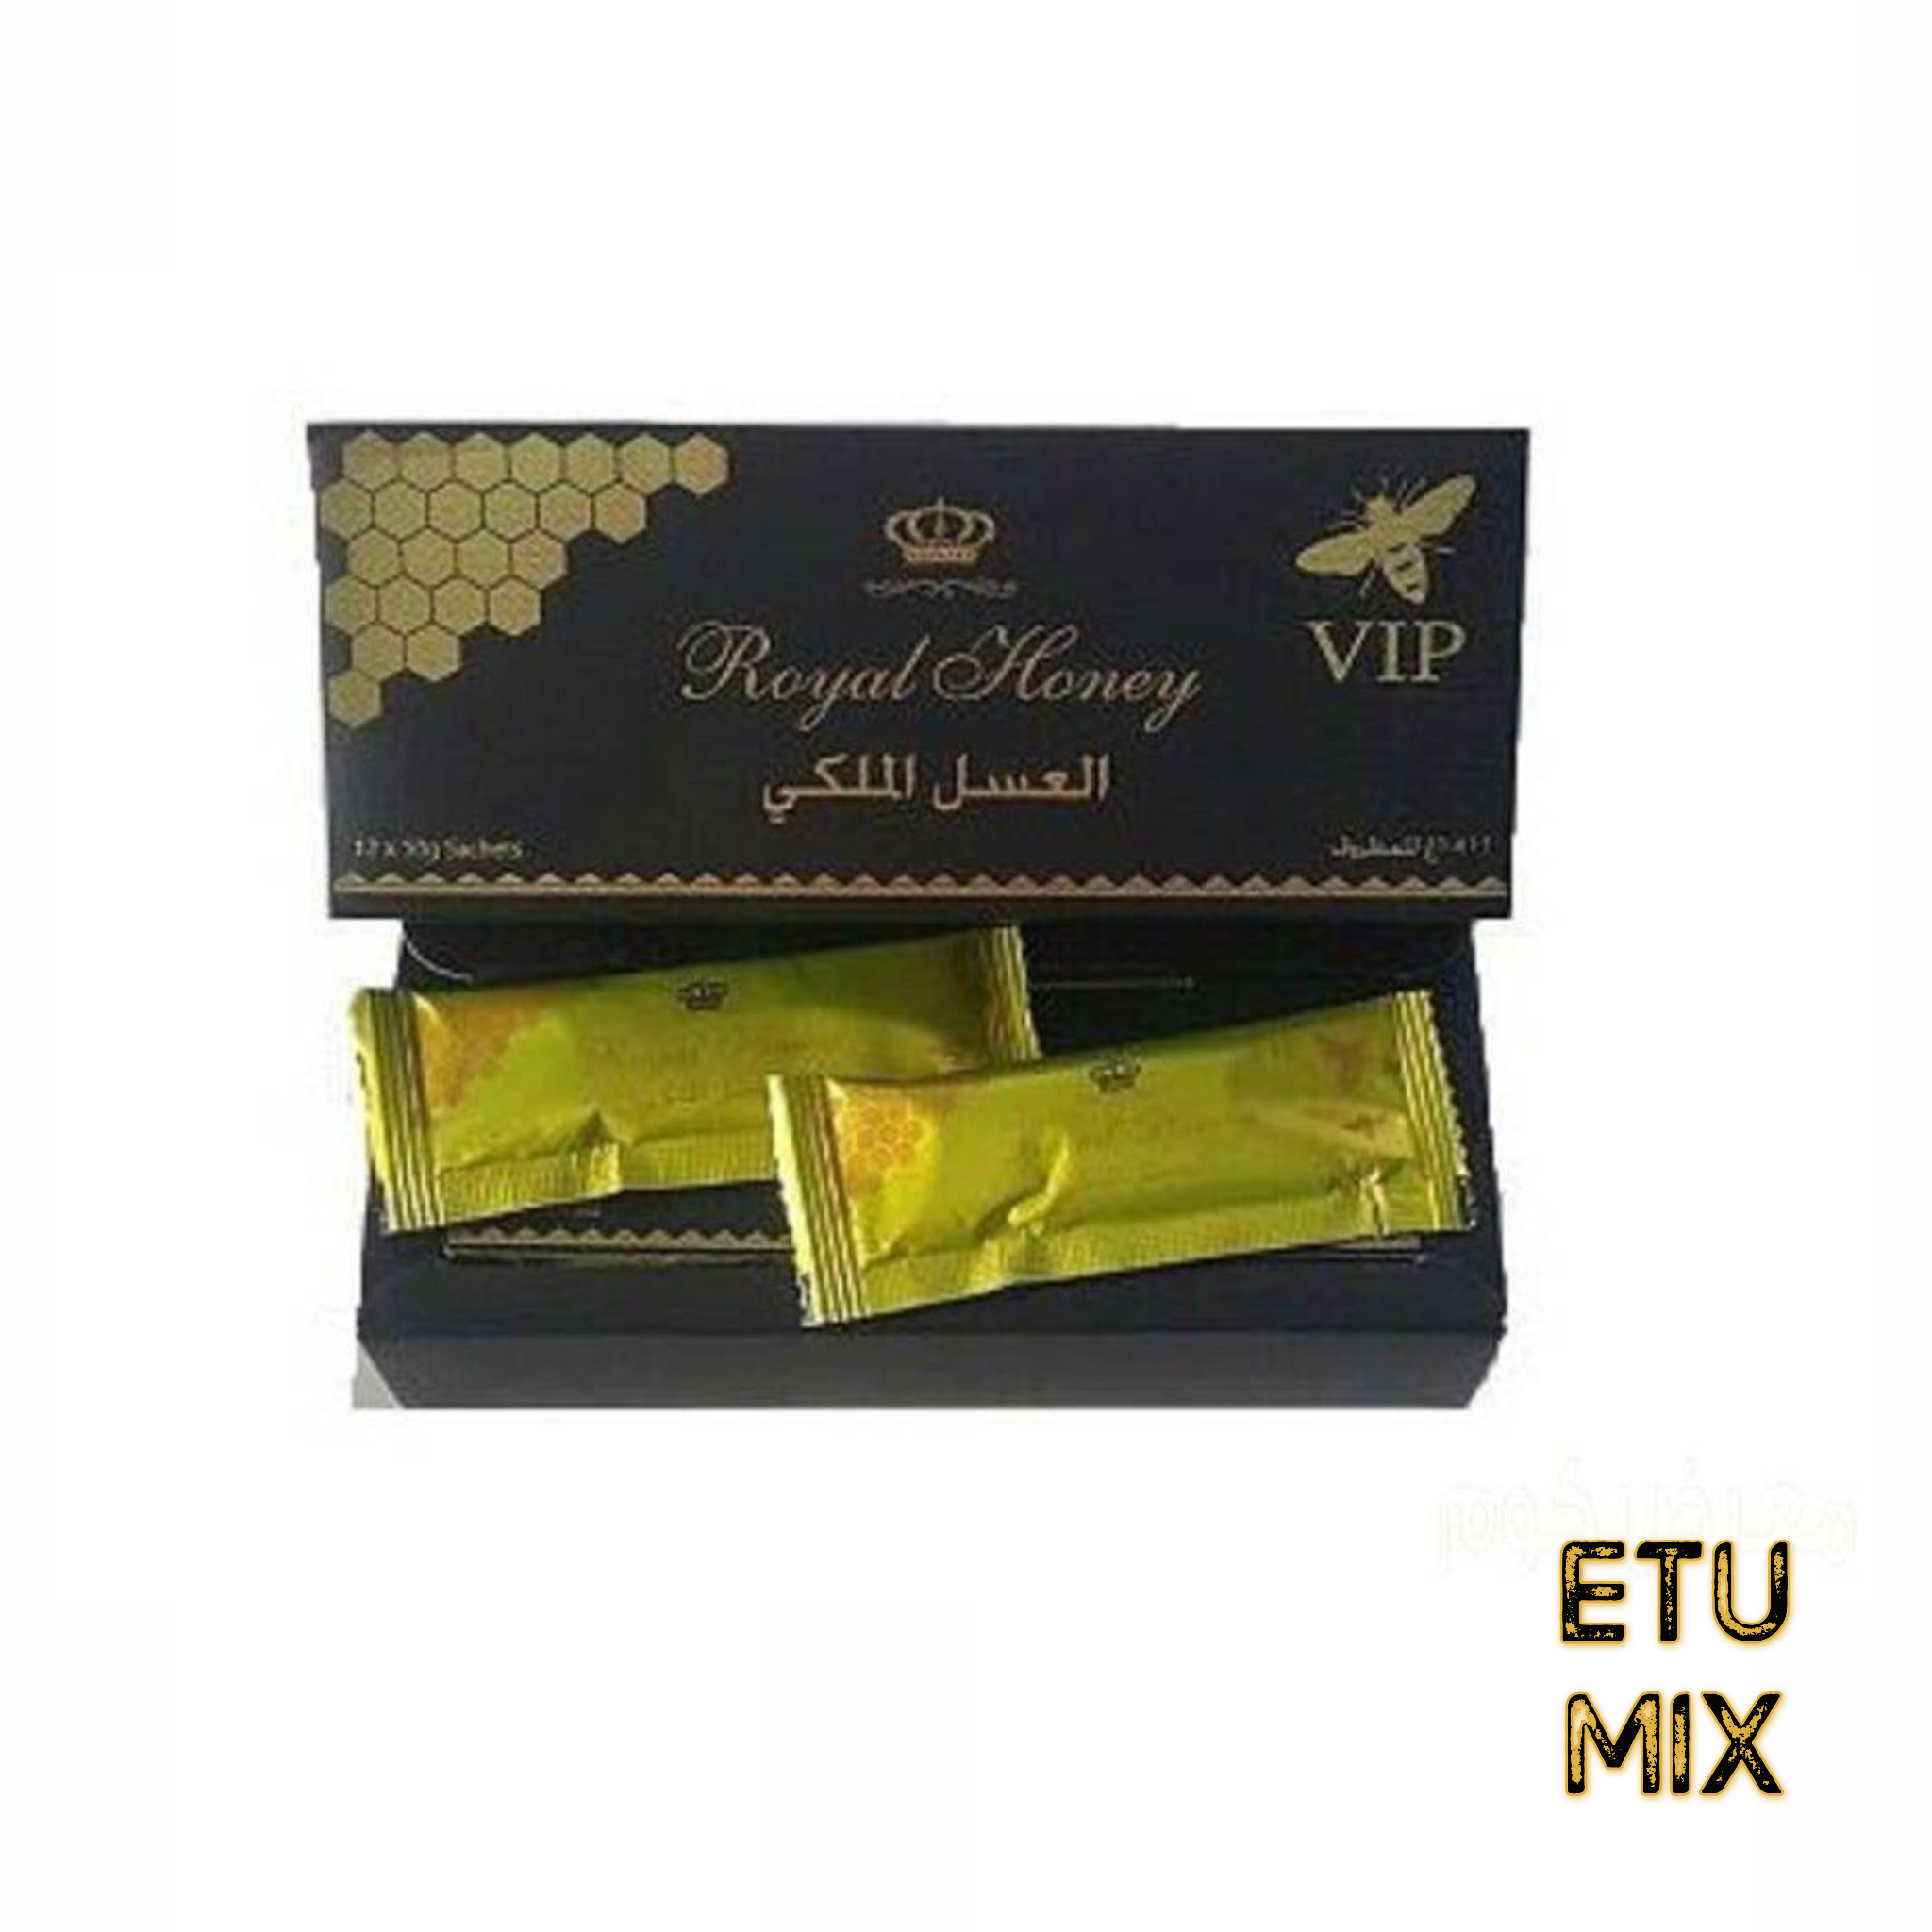 العسل الملكي Etumax الماليزي الفضي للرجال 12 ظرف 20 جرام ايتوماكس - عرب  تريند